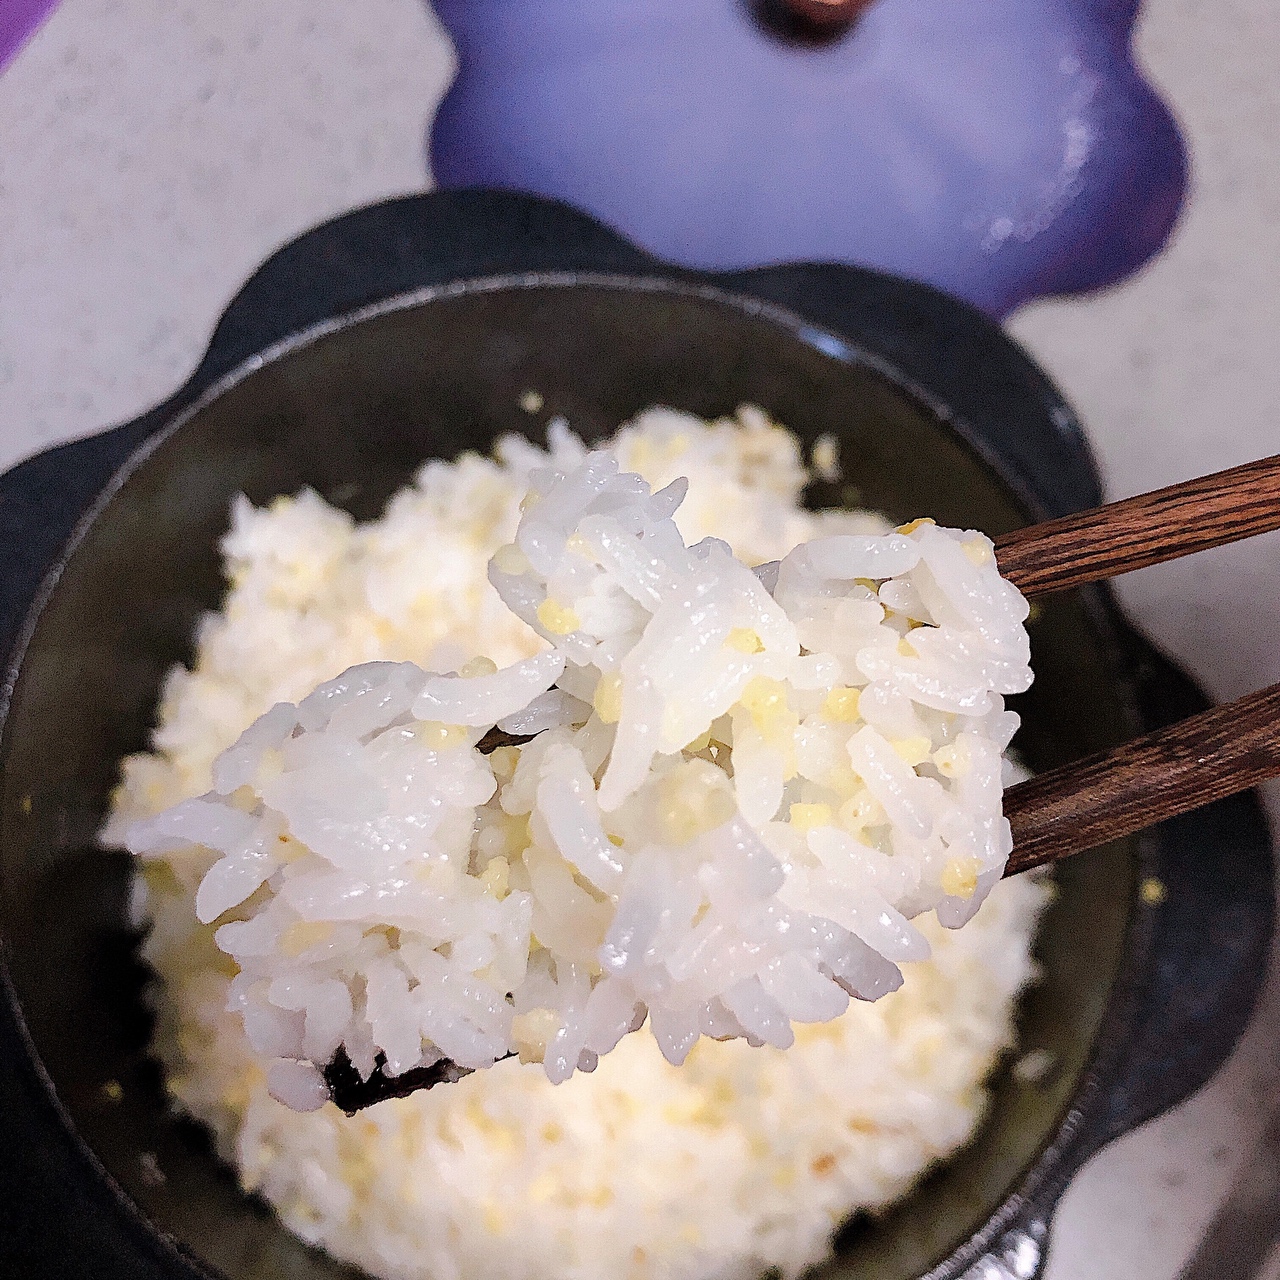 无锅巴铸铁锅焖饭的做法